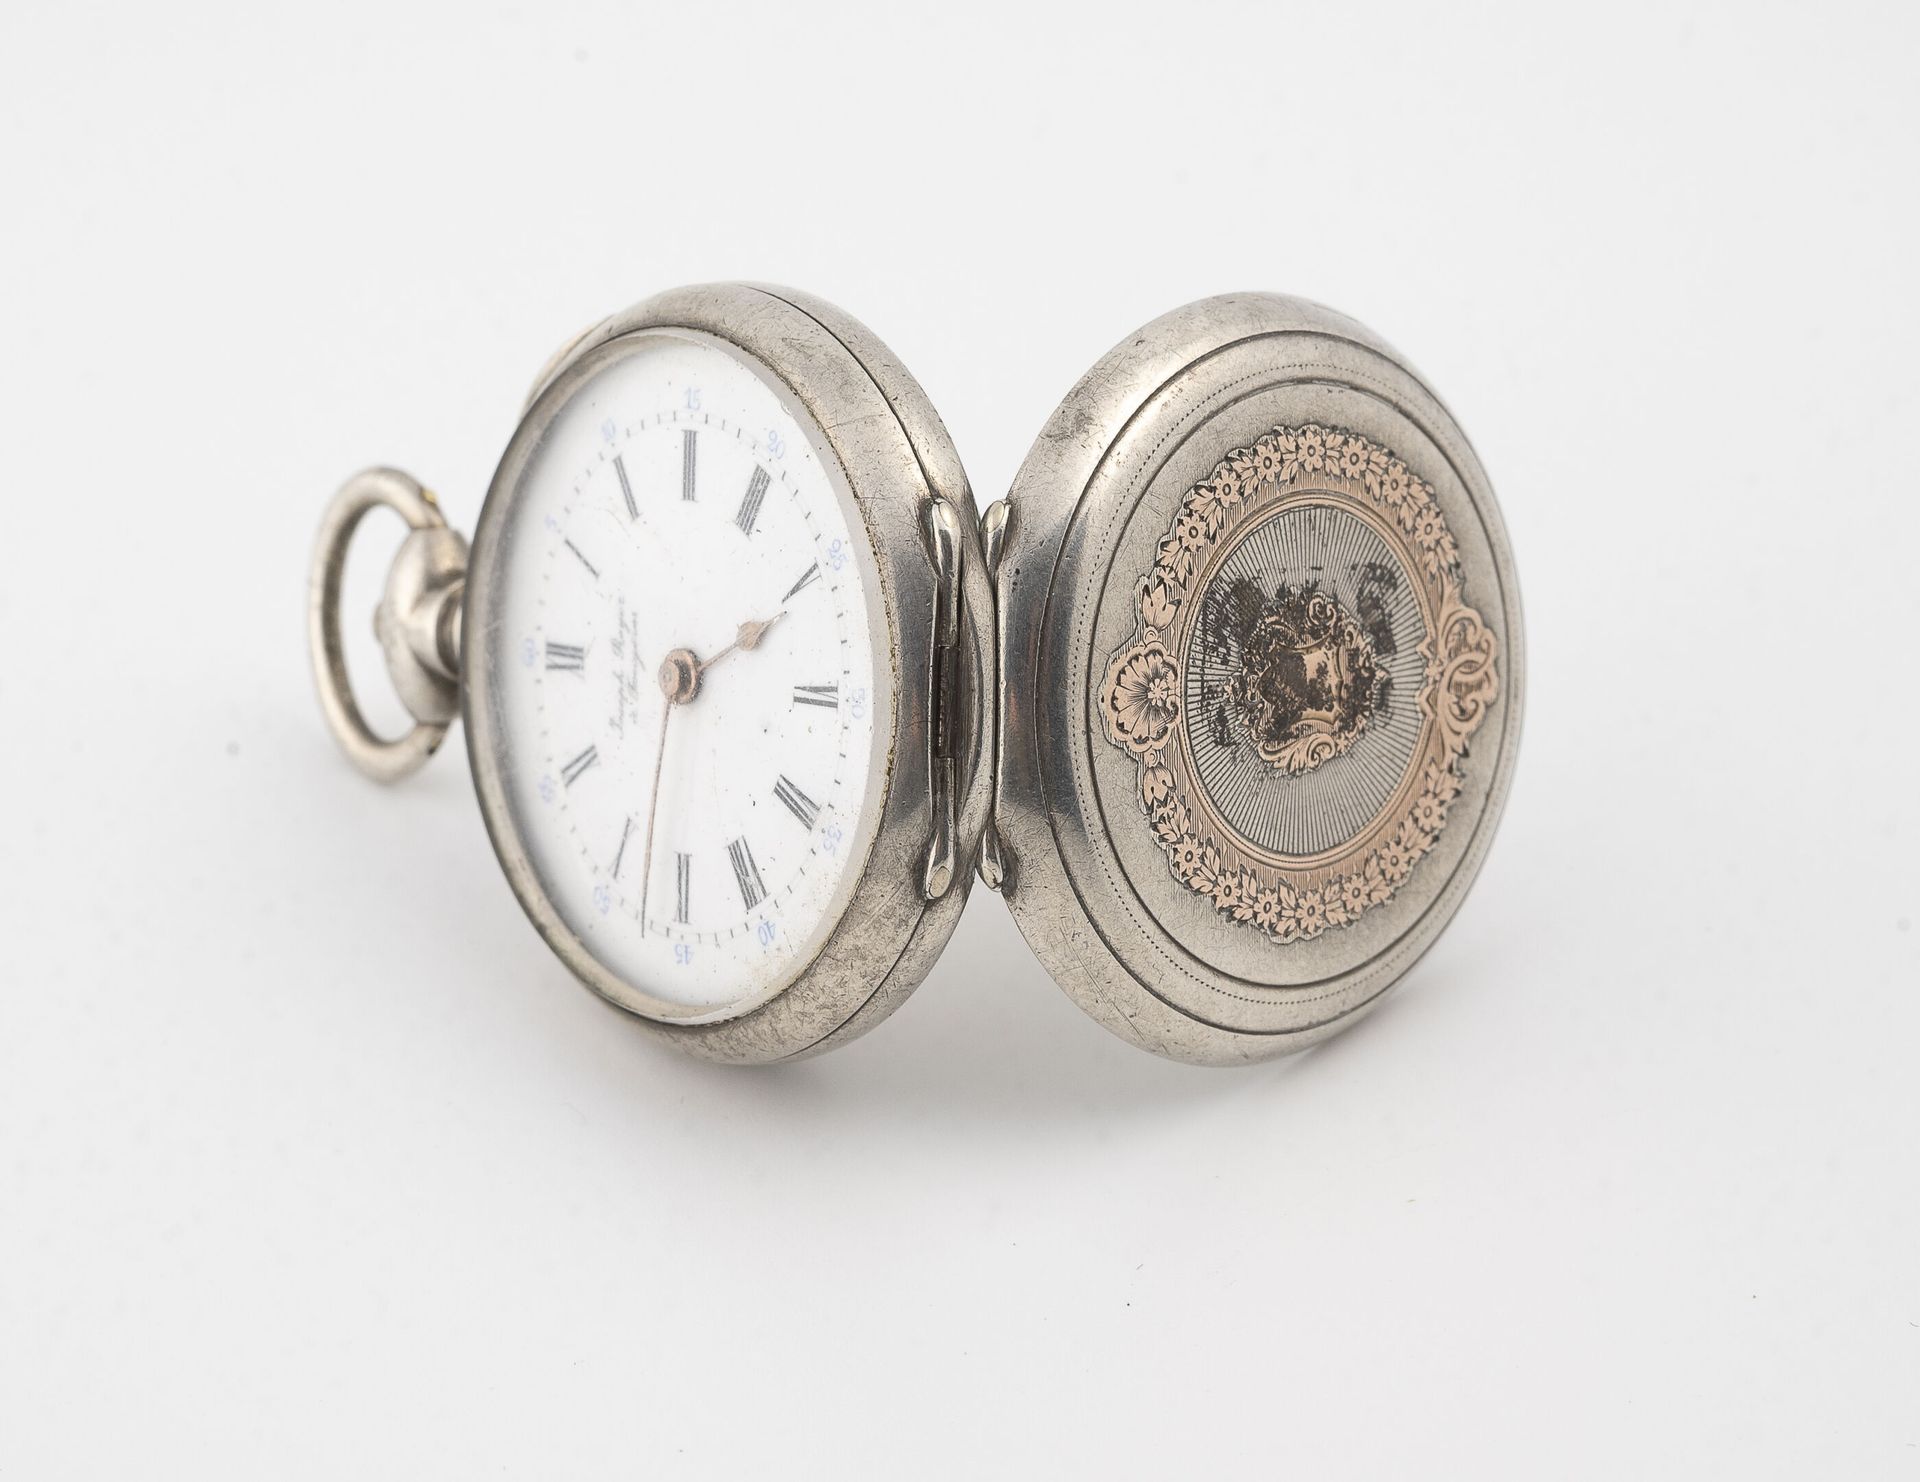 Null Taschenuhr aus Silber (min. 800).

Hinterer Deckel aus Silber und vergoldet&hellip;